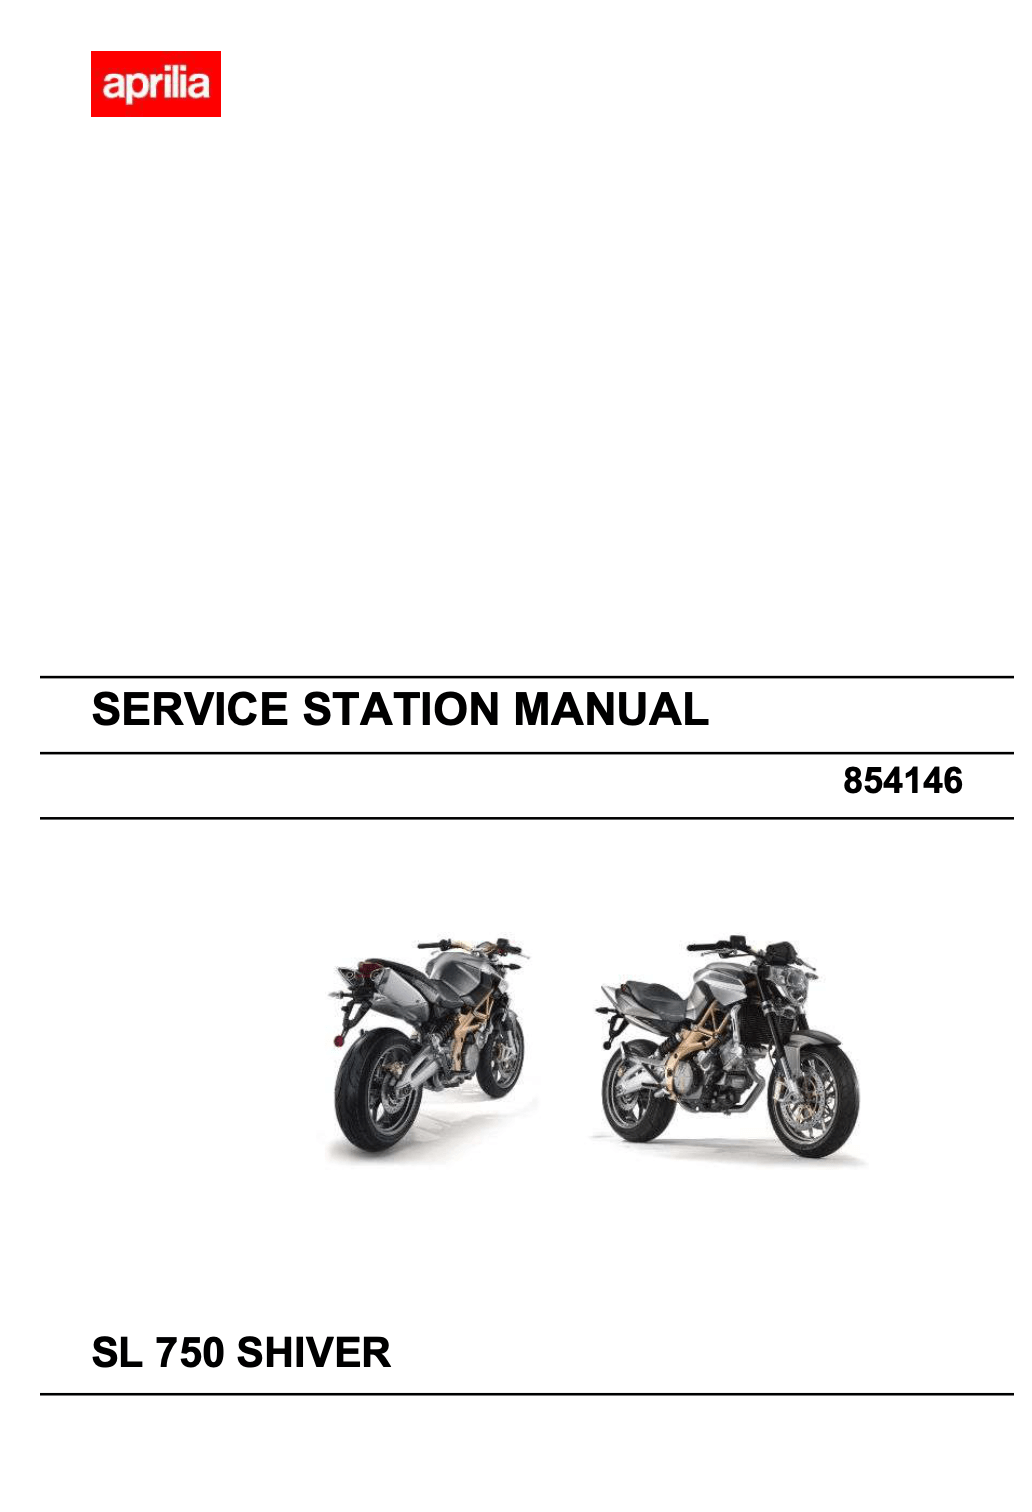 Aprilia SL 750 Shiver models 2007 to 2016 original motorcycle manufacturer's PDF repair manual download